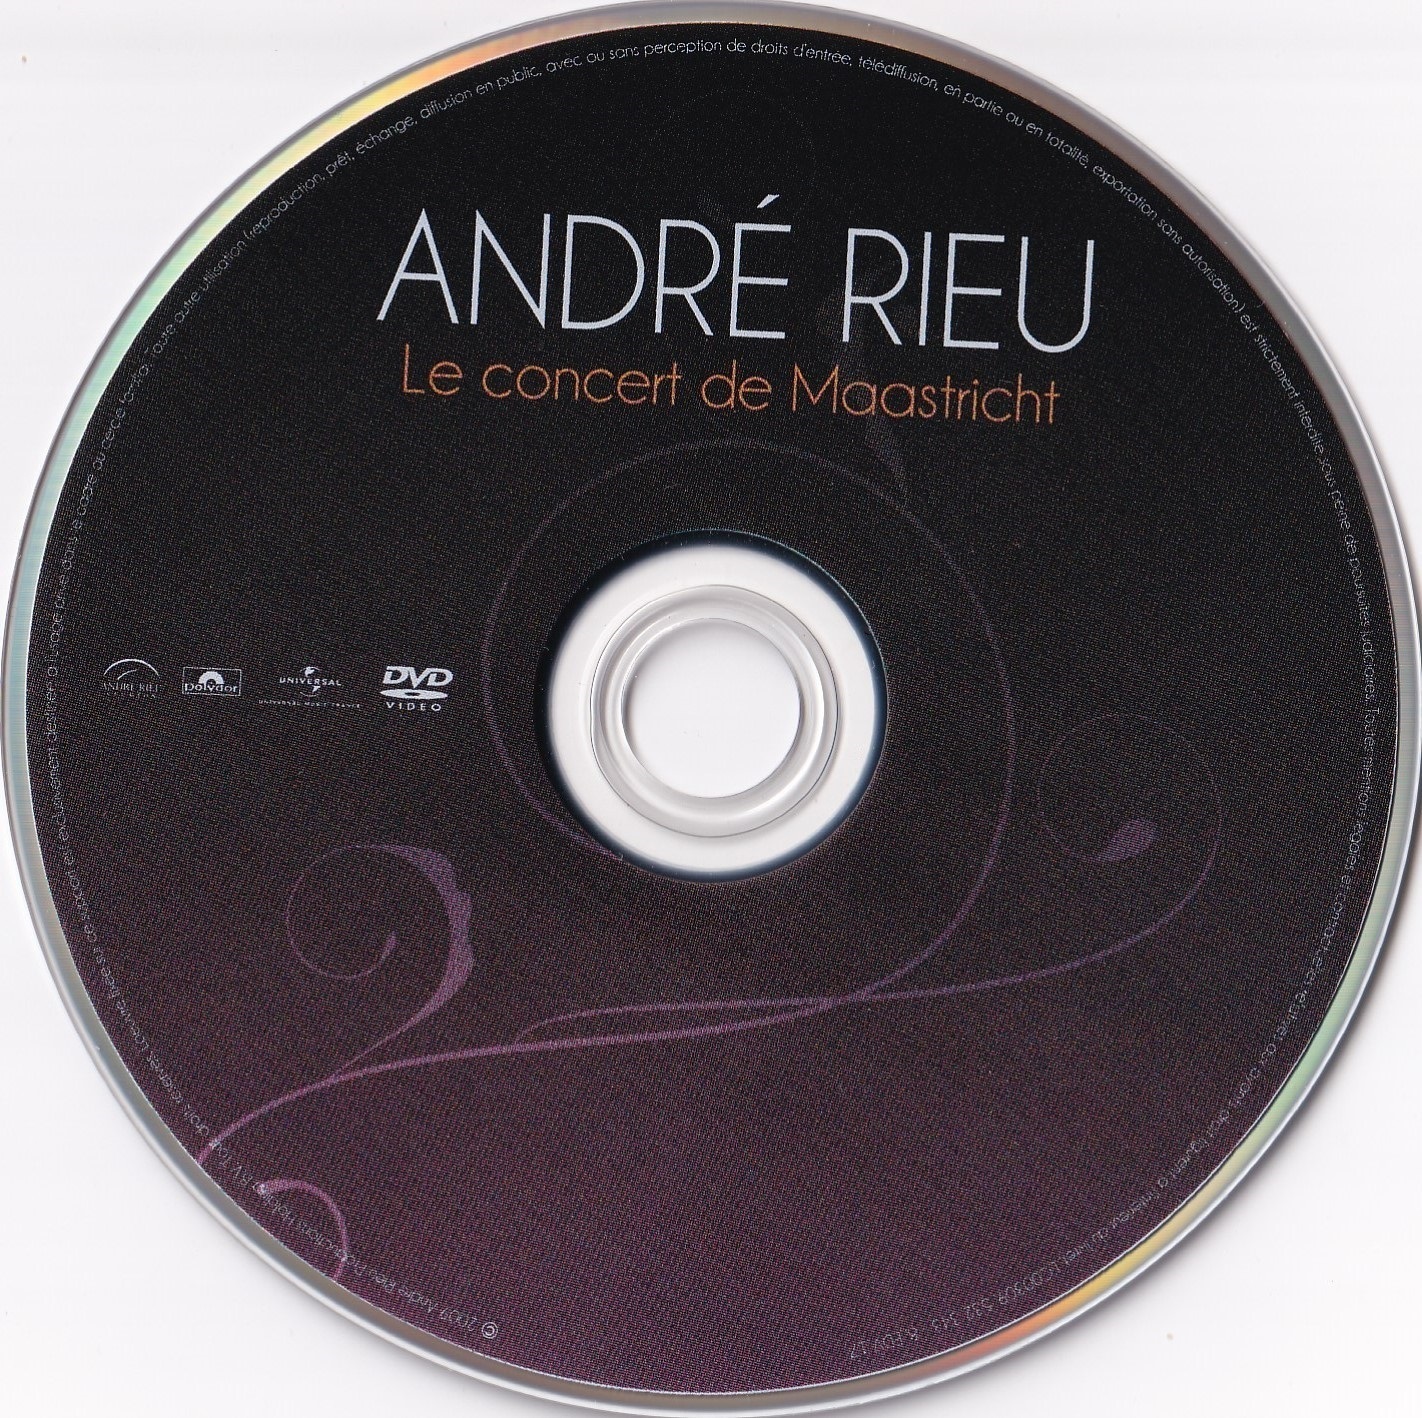 Andre Rieu Le Concert de Maastricht